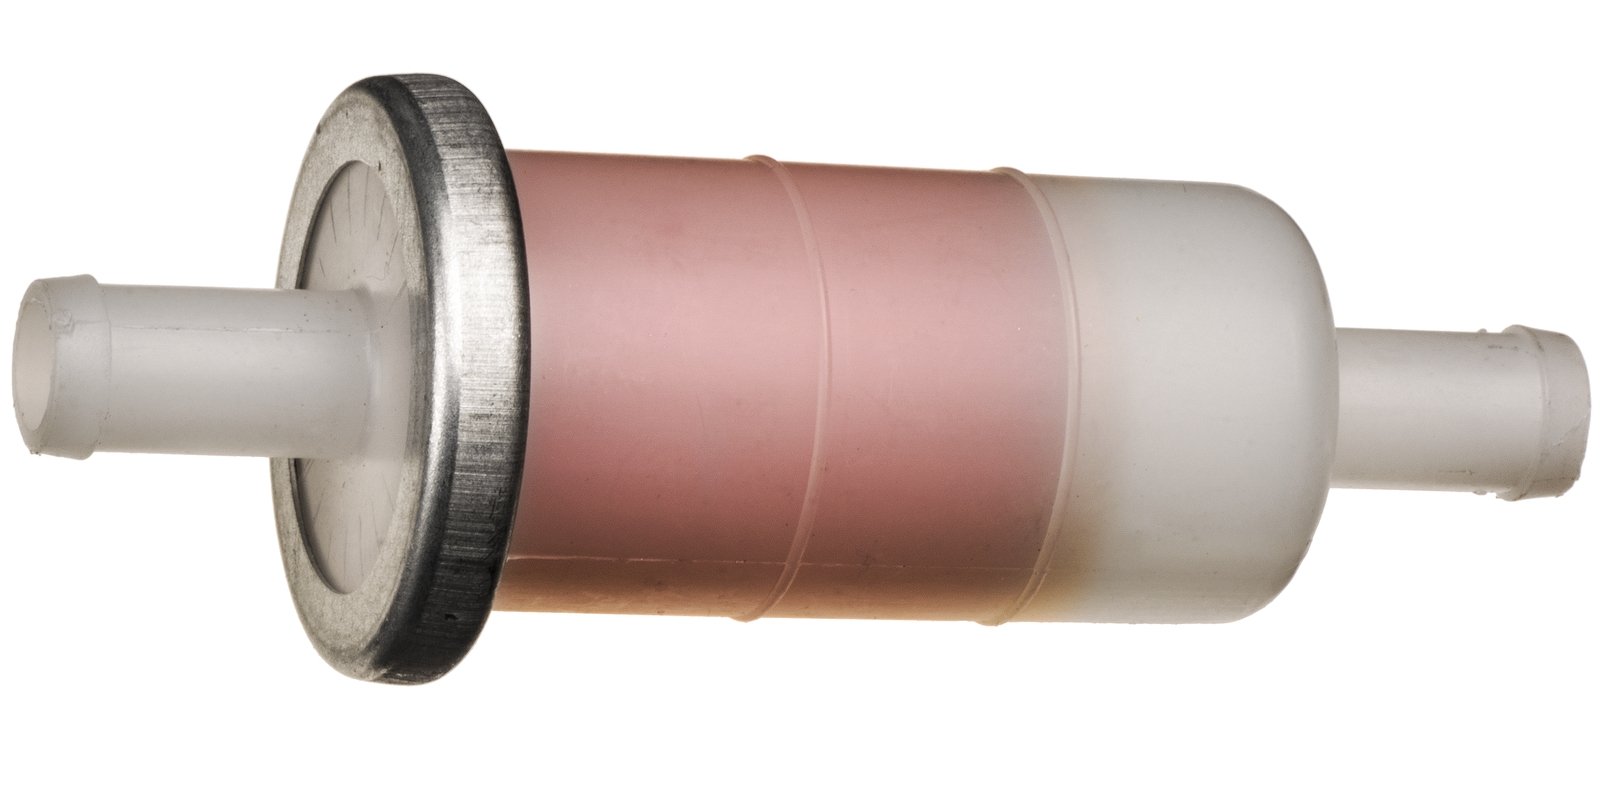 Obrázek produktu palivový filtr s papírovou vložkou, Q-TECH (pro vnitřní průměr hadice 10 mm) MFU-007